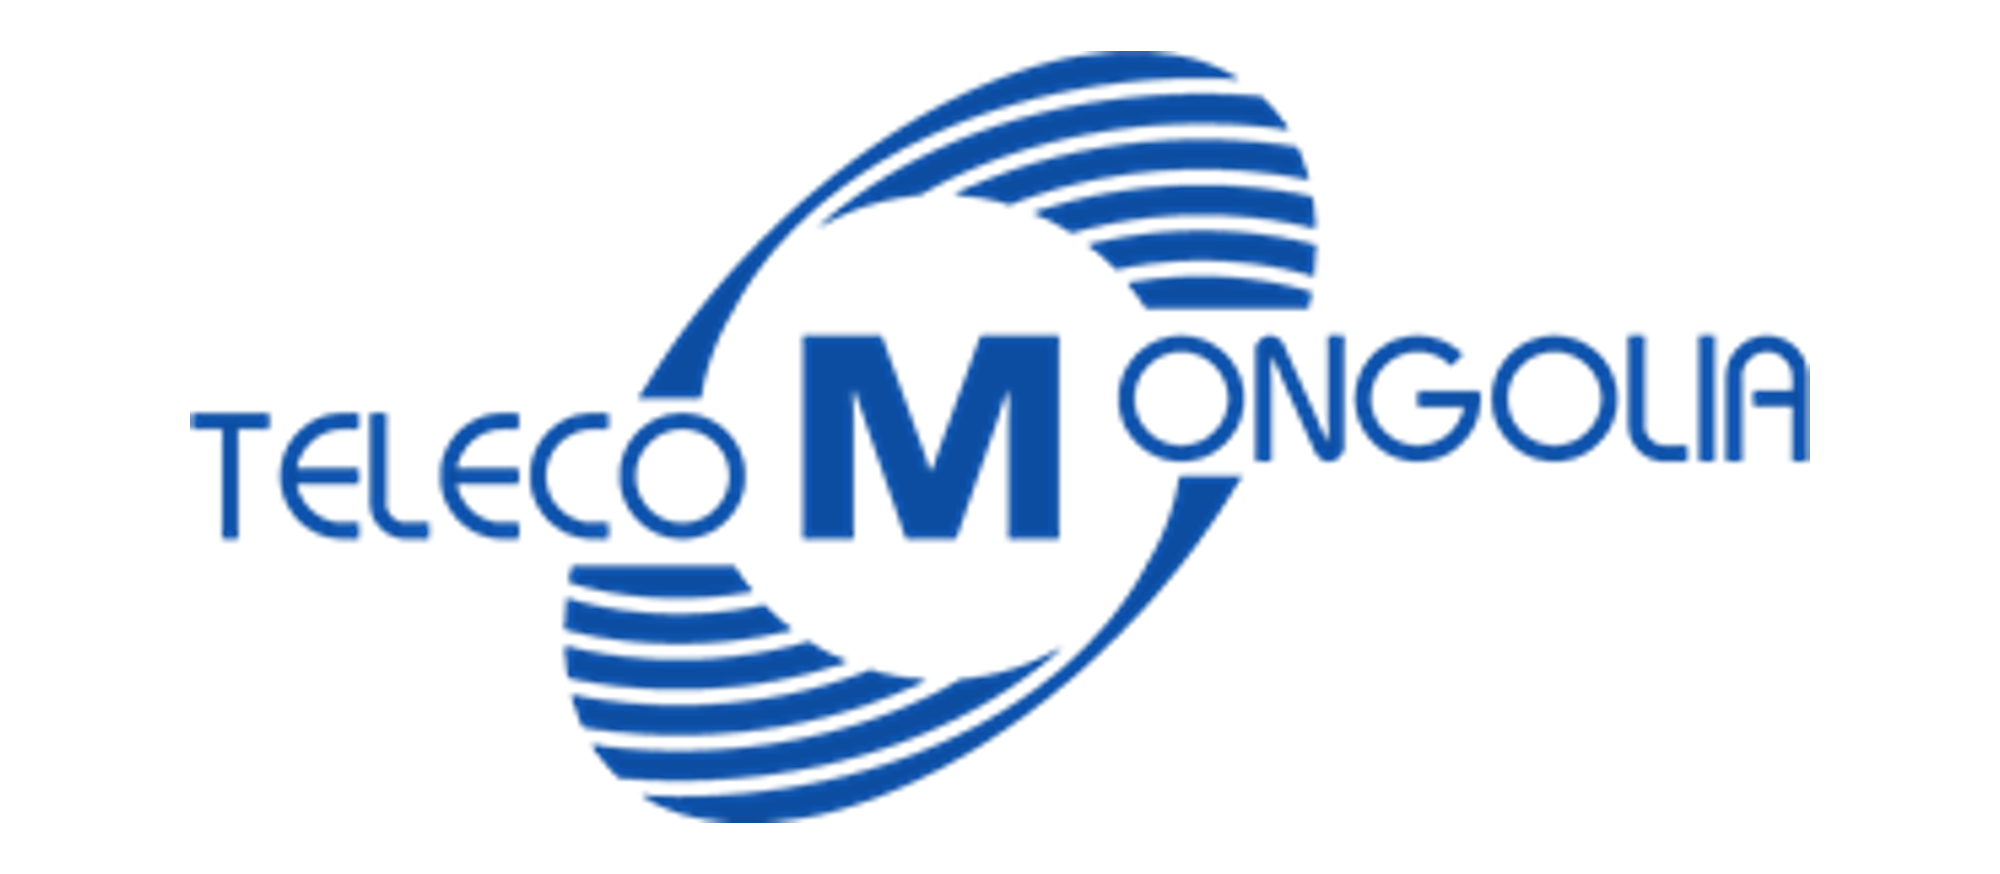 Telecom-mongolia